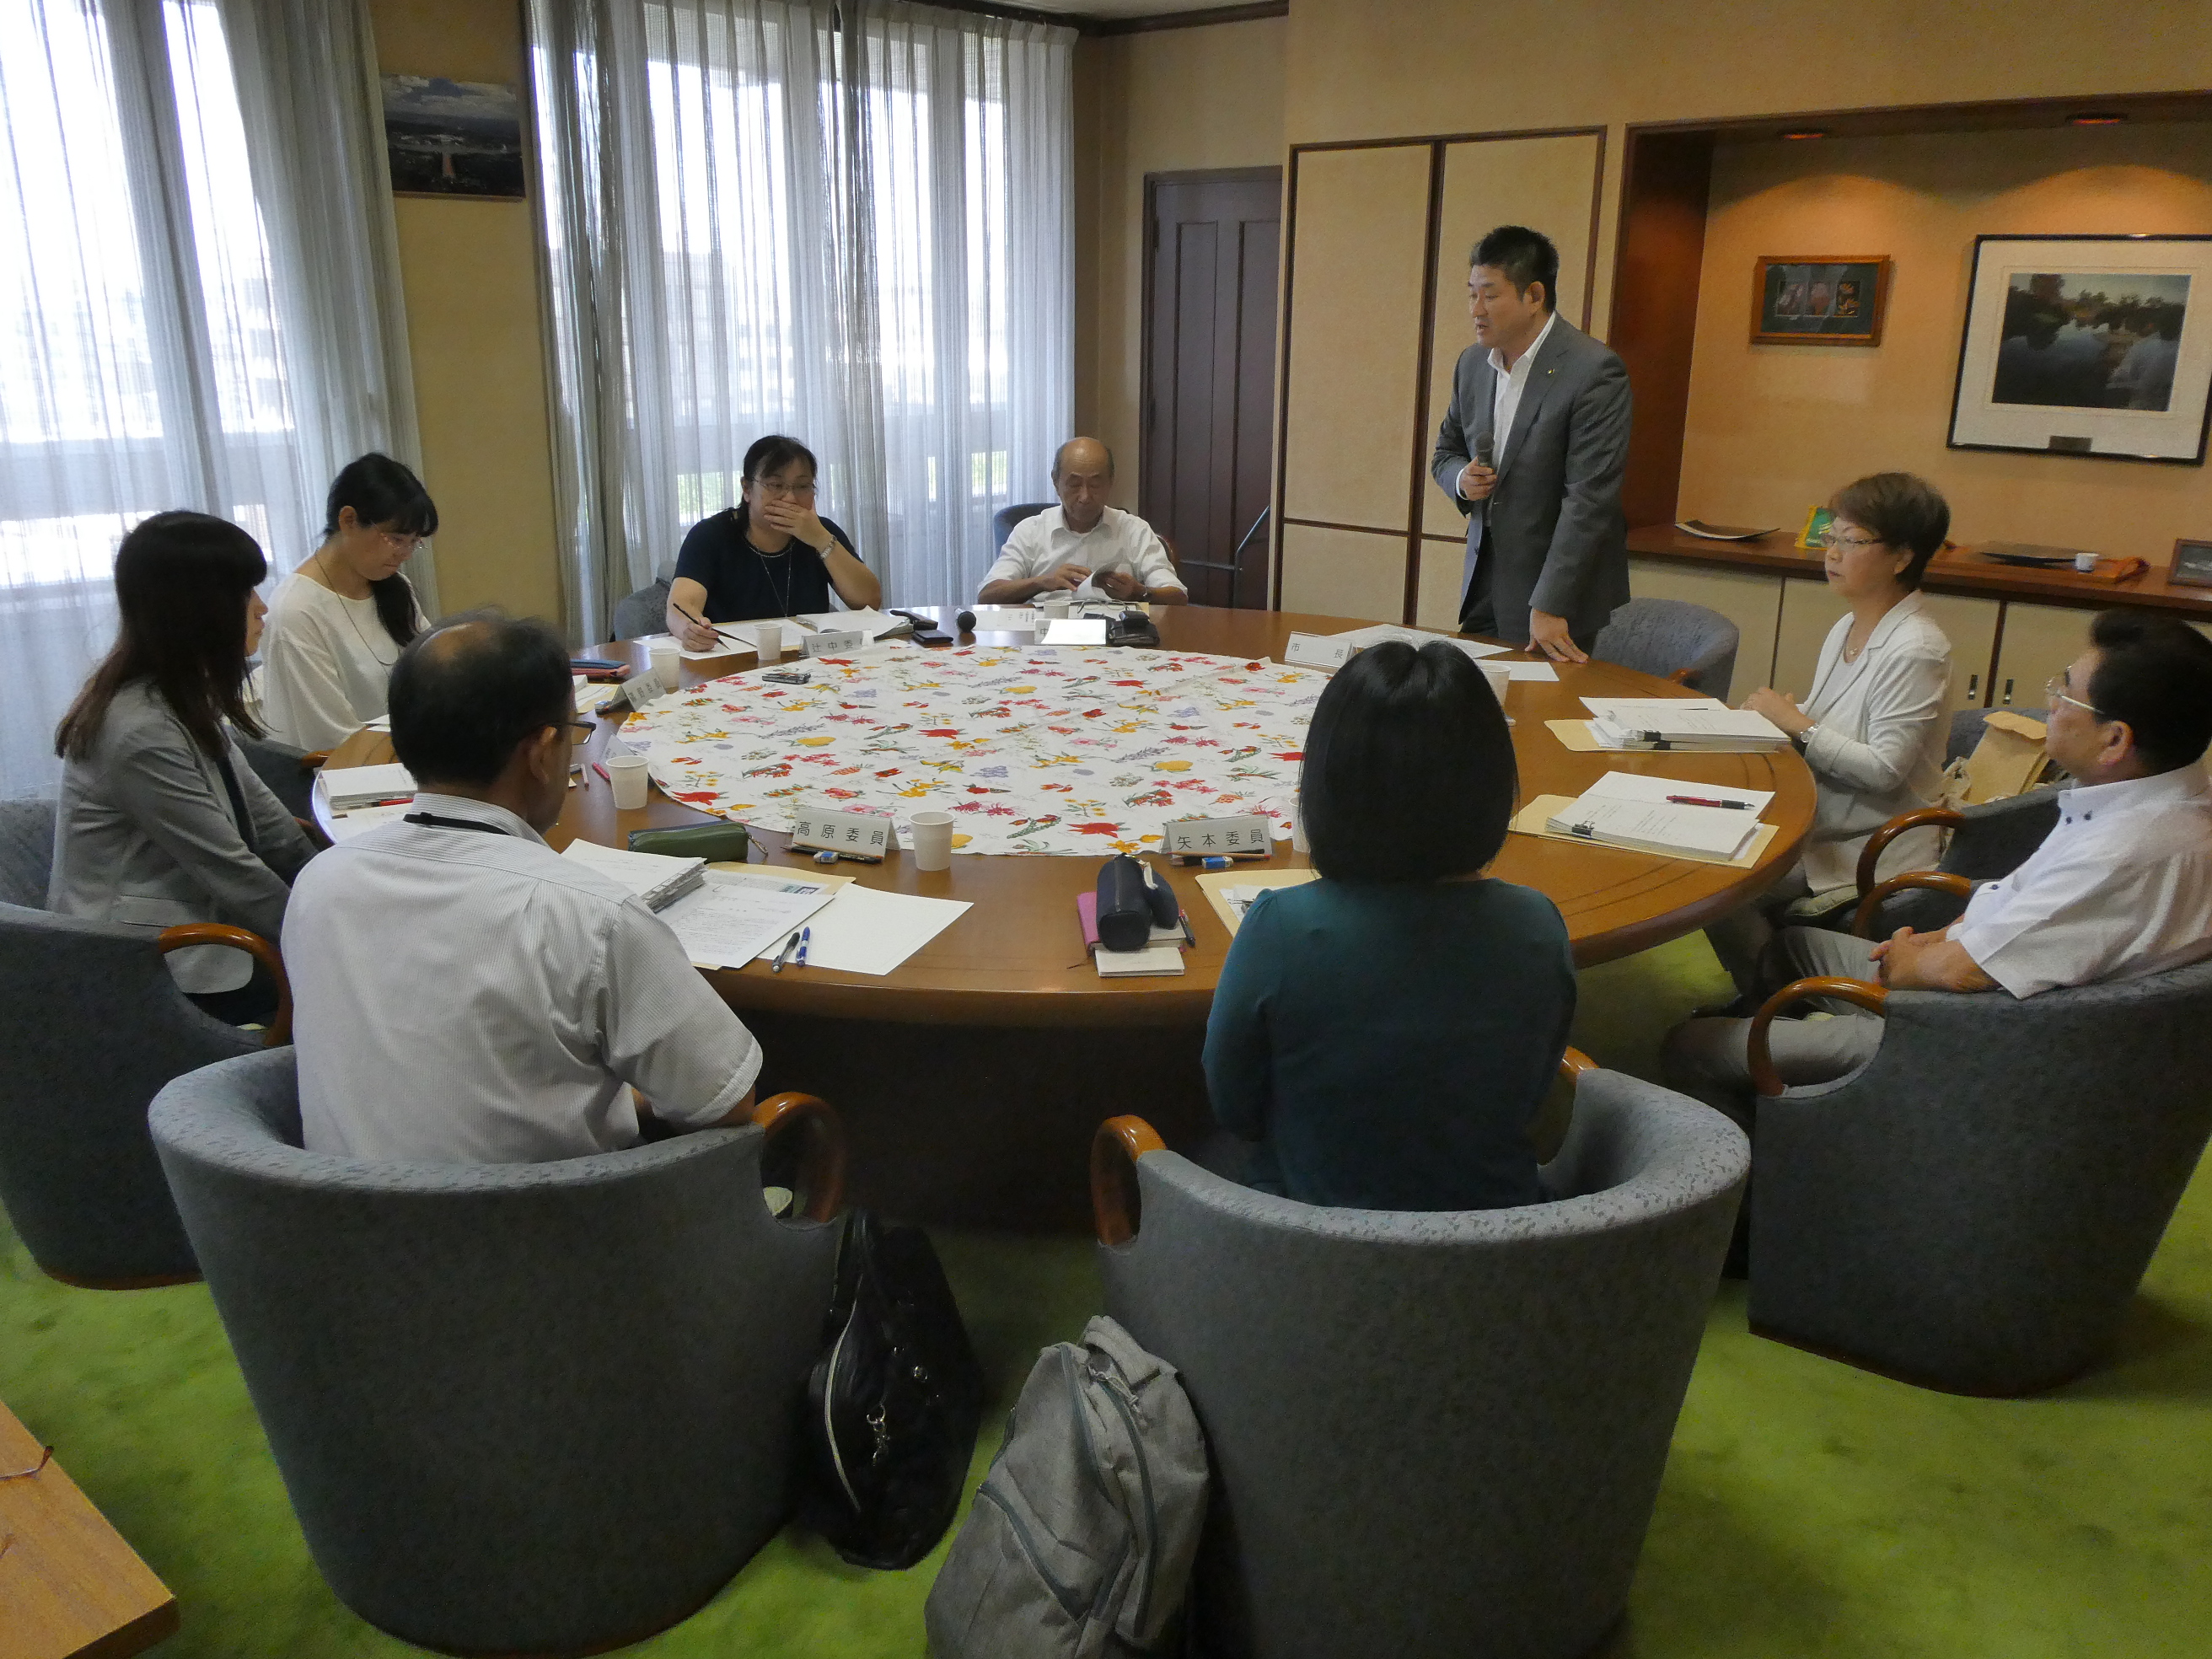 令和元年度第1回奈良市市民参画及び協働によるまちづくり審議会